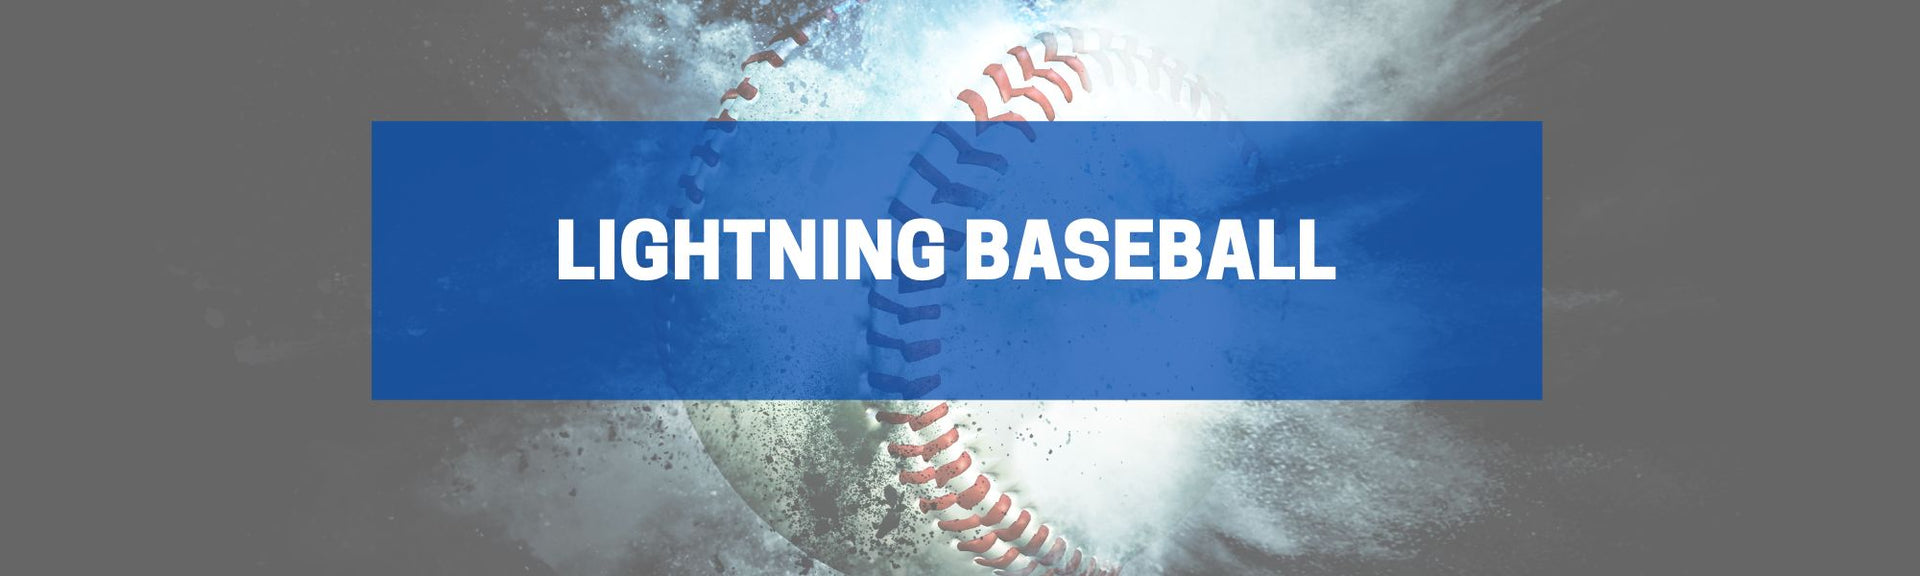 Lightning Baseball